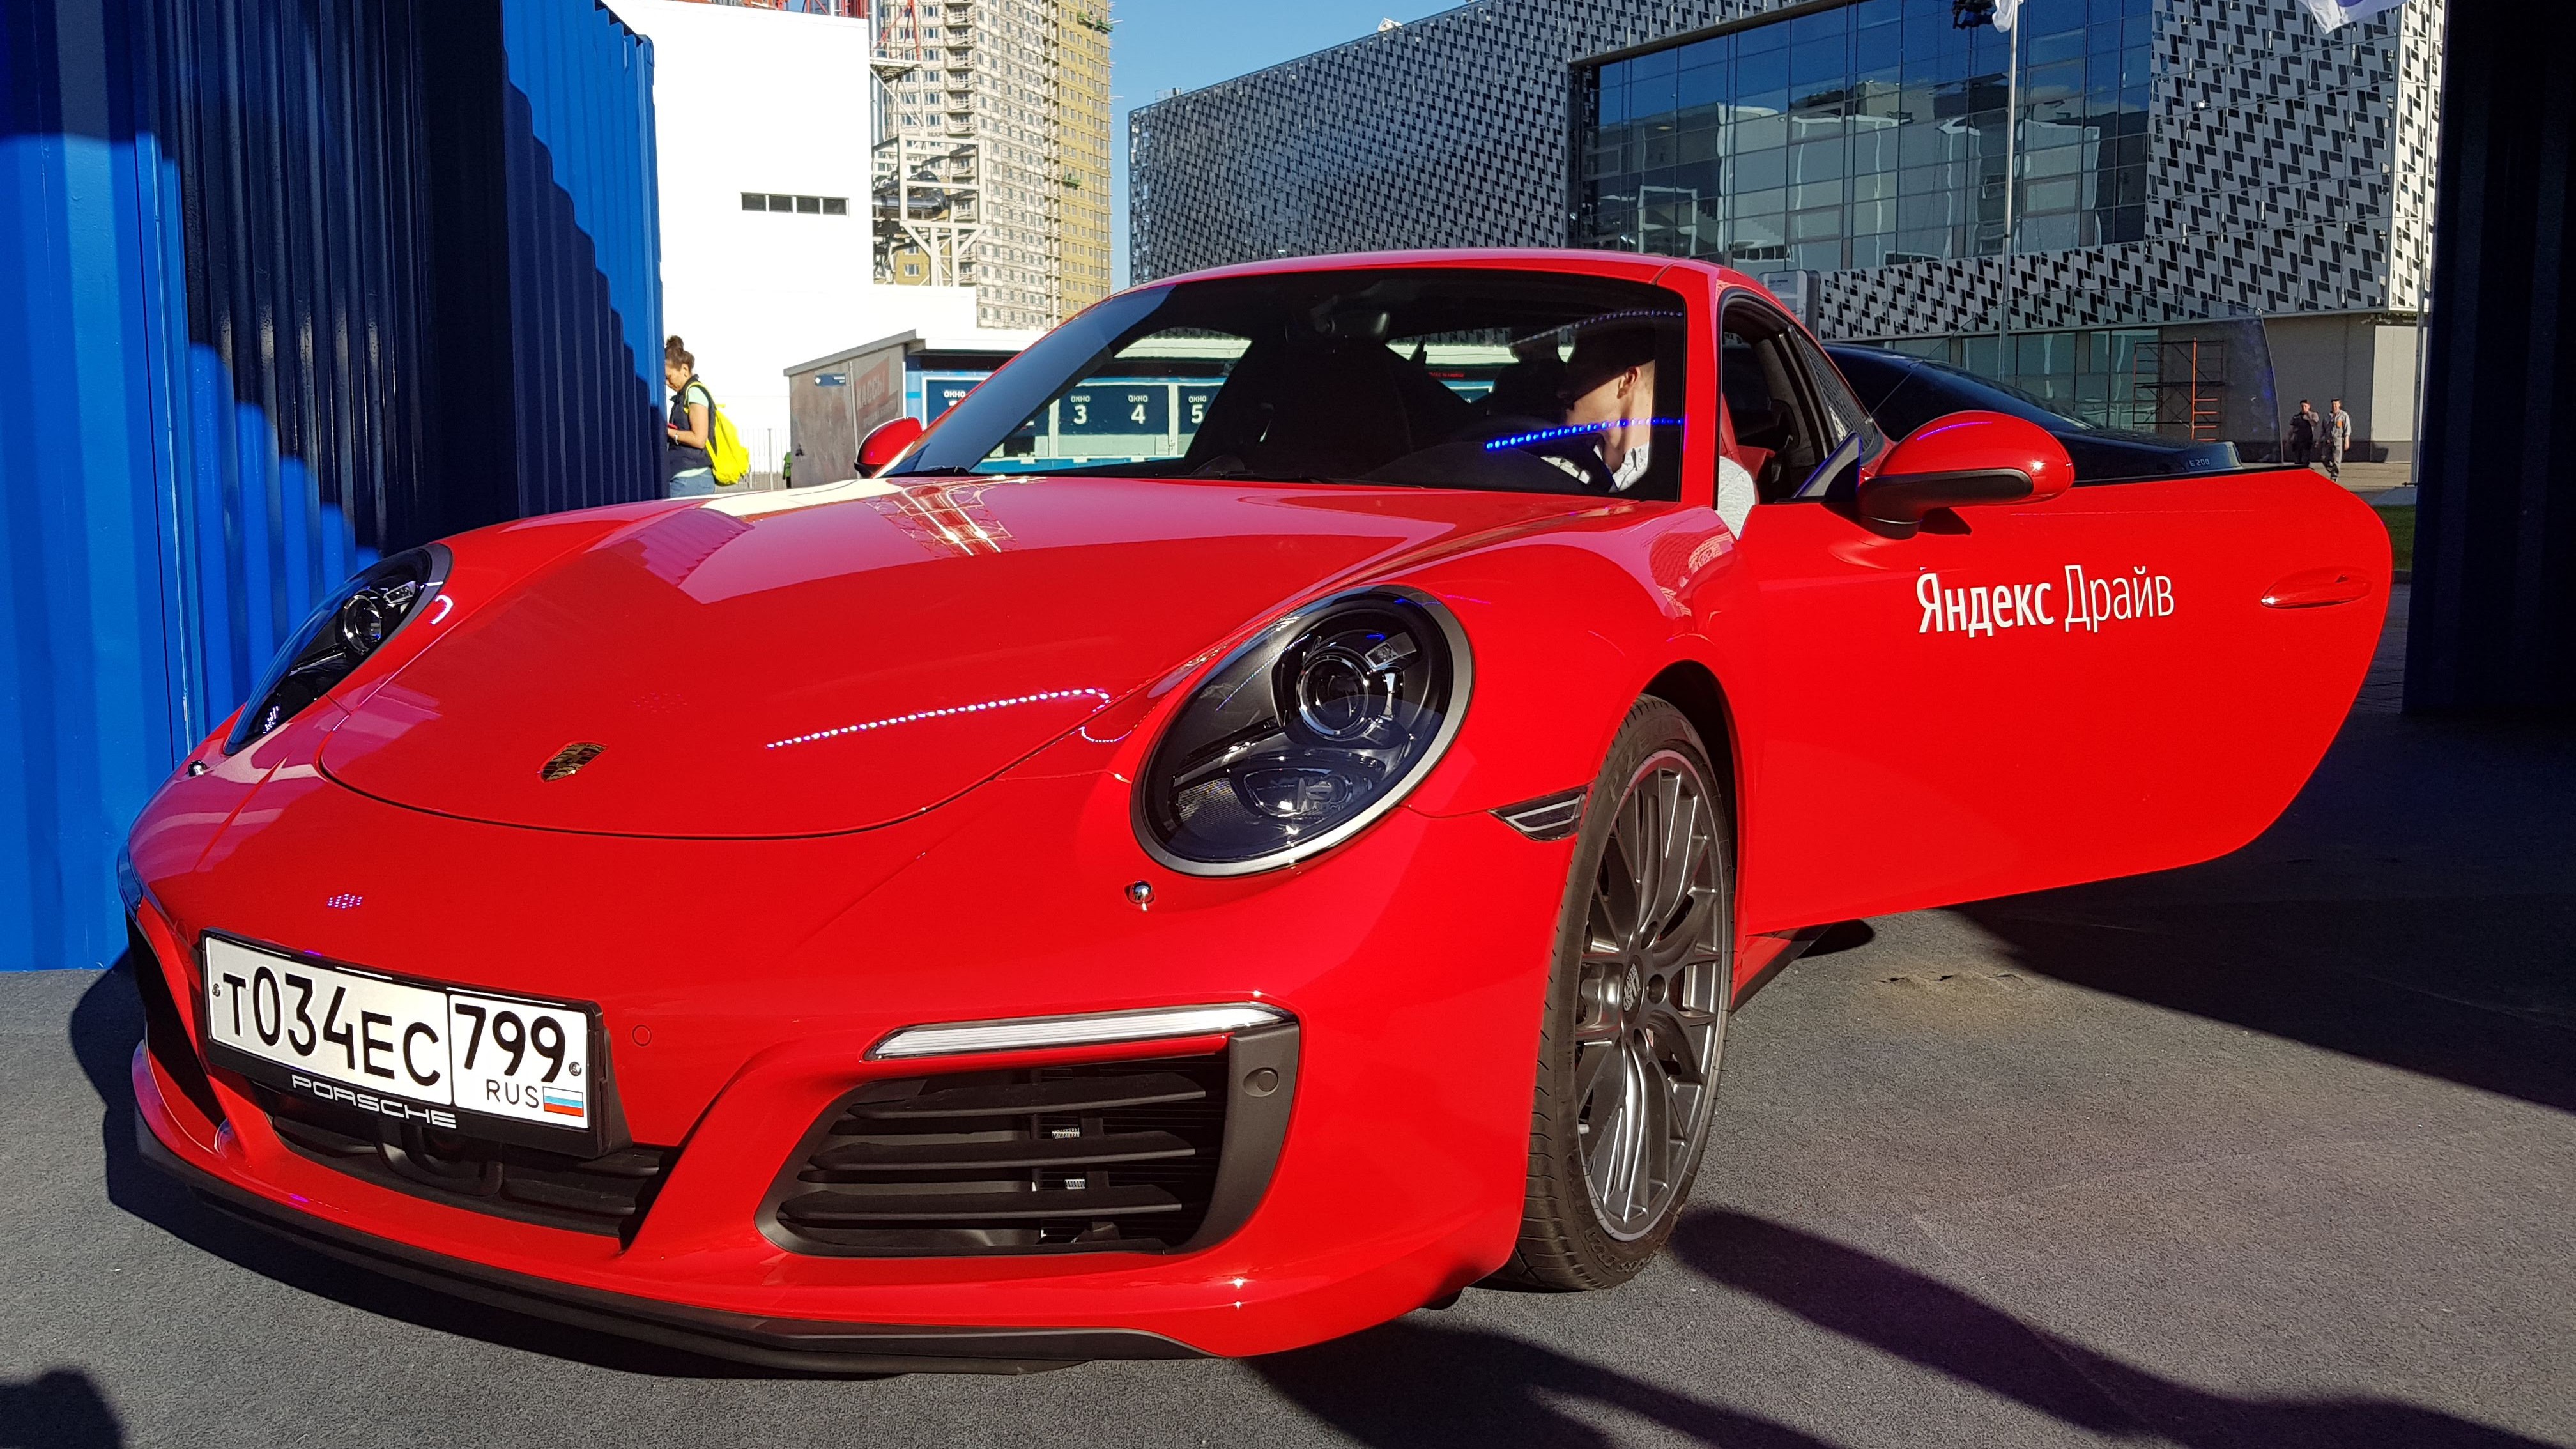 Автопарк «Яндекс.Драйв» пополнился Porsche Macan и 911 Carrera RS